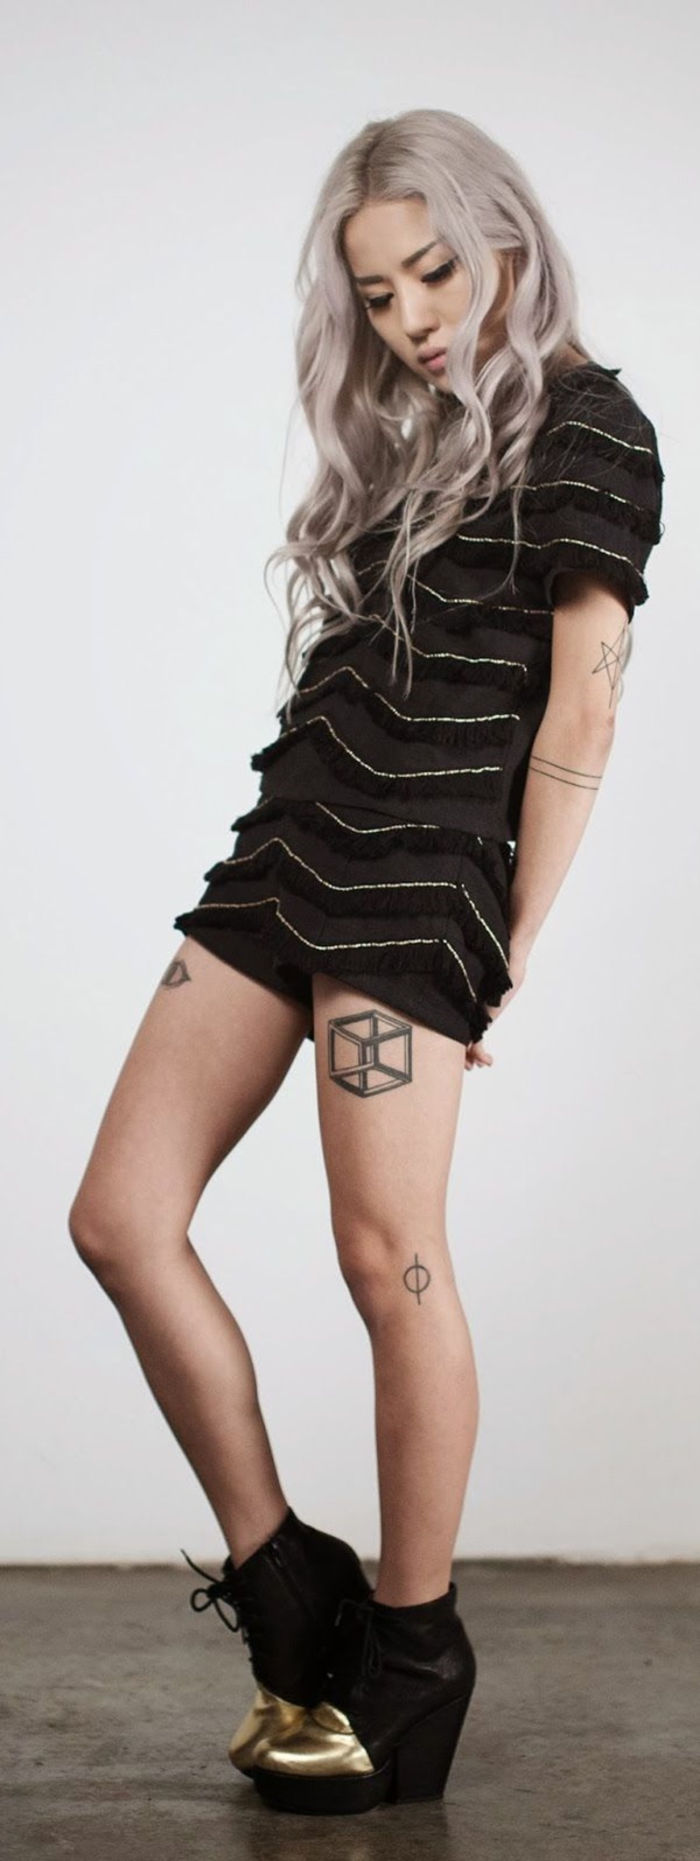 Tatuaggi alle gambe, tatuaggio sulla coscia, cubo, motivi del tatuaggio femminile